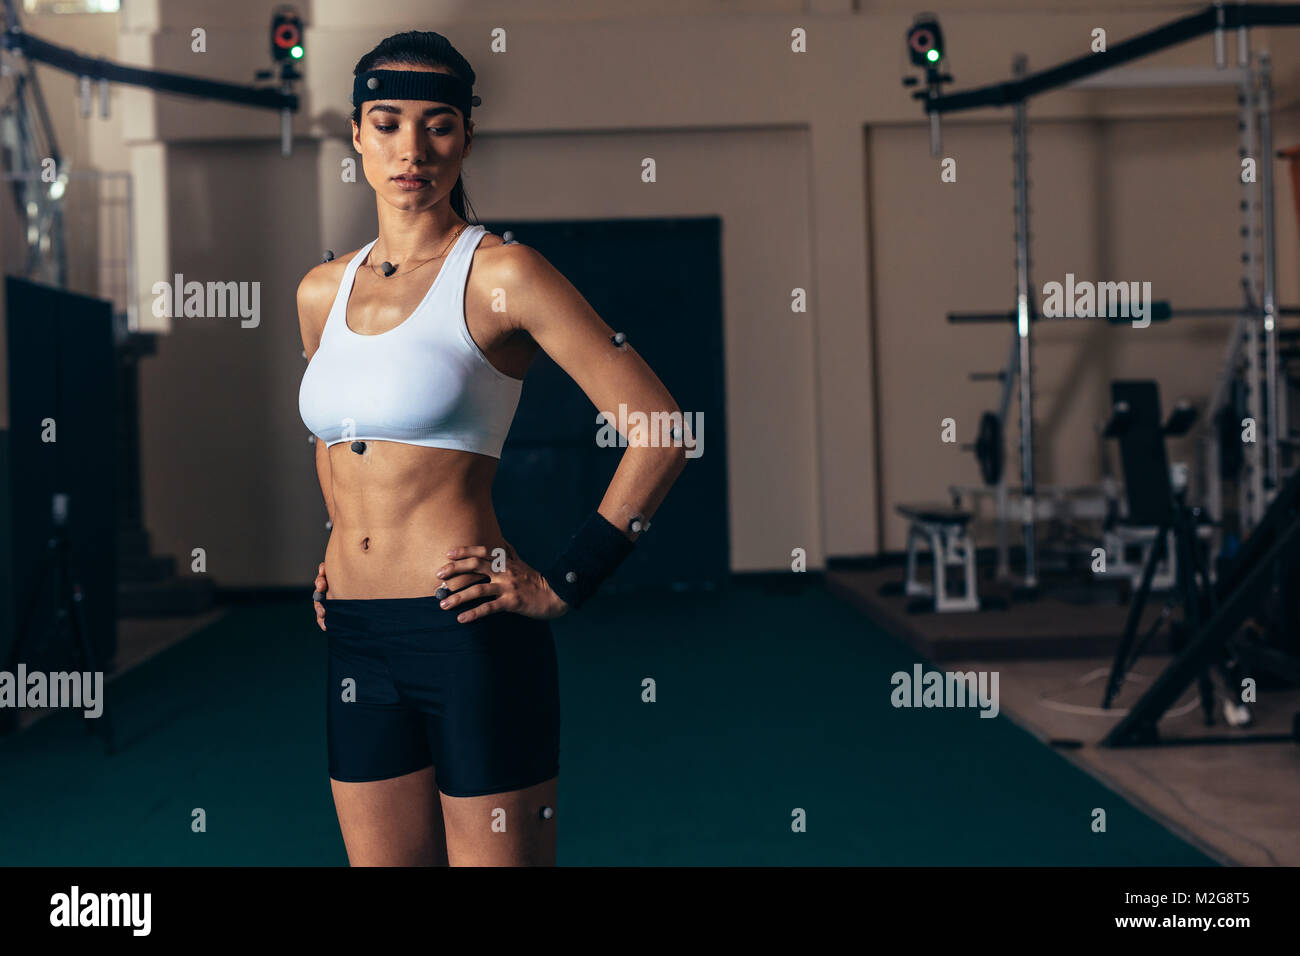 Weiblichen Athleten mit Motion Capturing Sensoren auf ihrem Körper die Bewegung und Leistung in der Biomechanik Labor aufzeichnen. Stockfoto